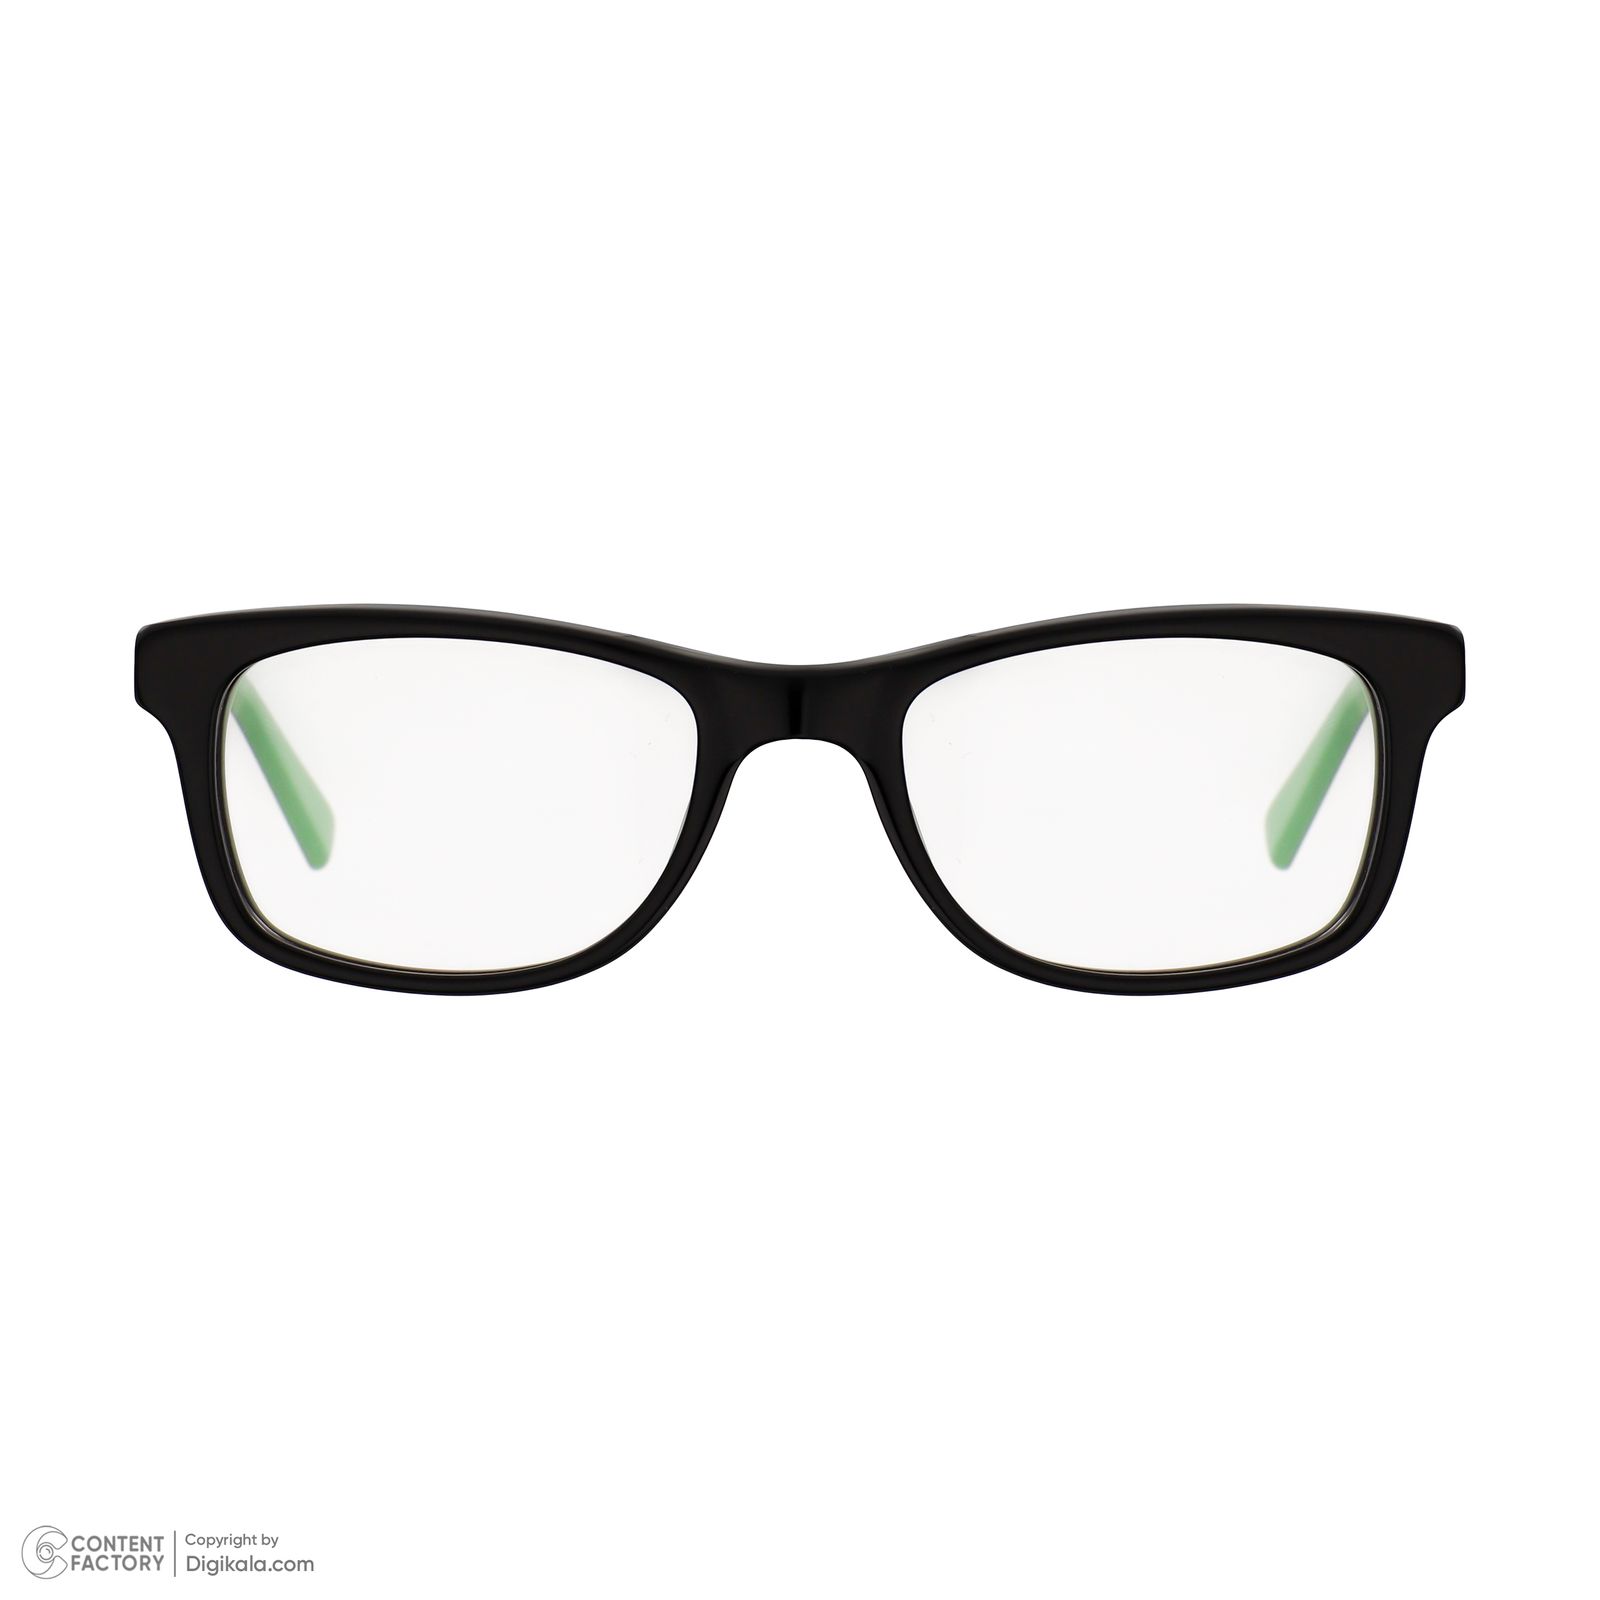 فریم عینک طبی نایکی مدل 5509-25 -  - 3